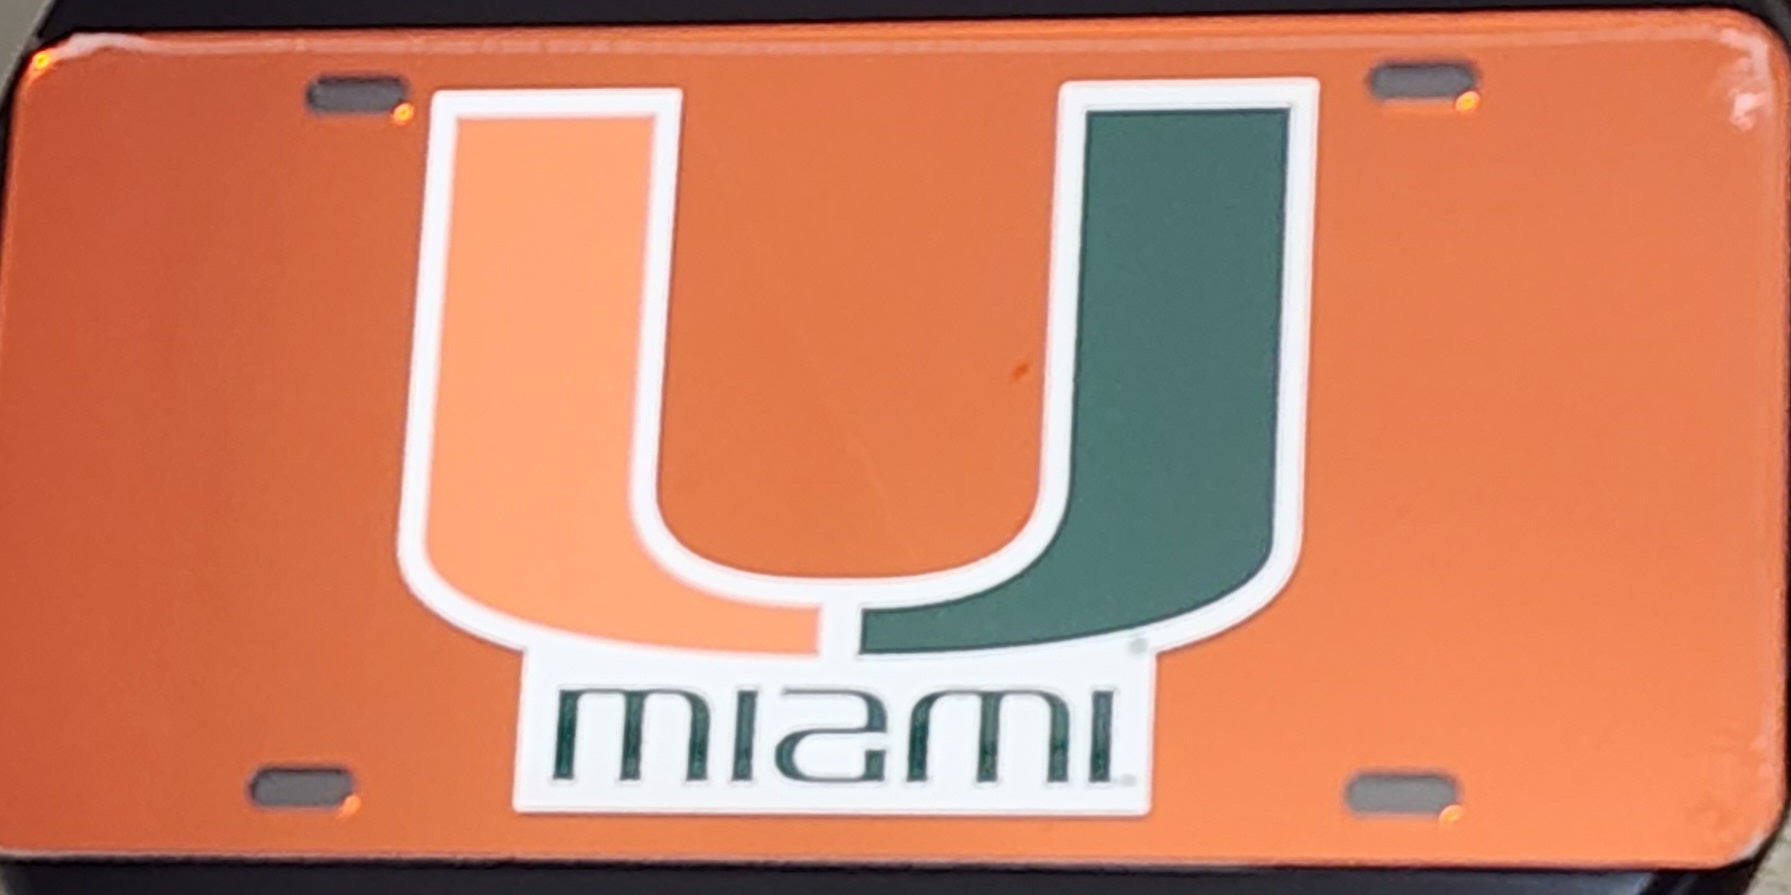 Miami Hurricanes Solid Colored Reflective License Plate - Orange